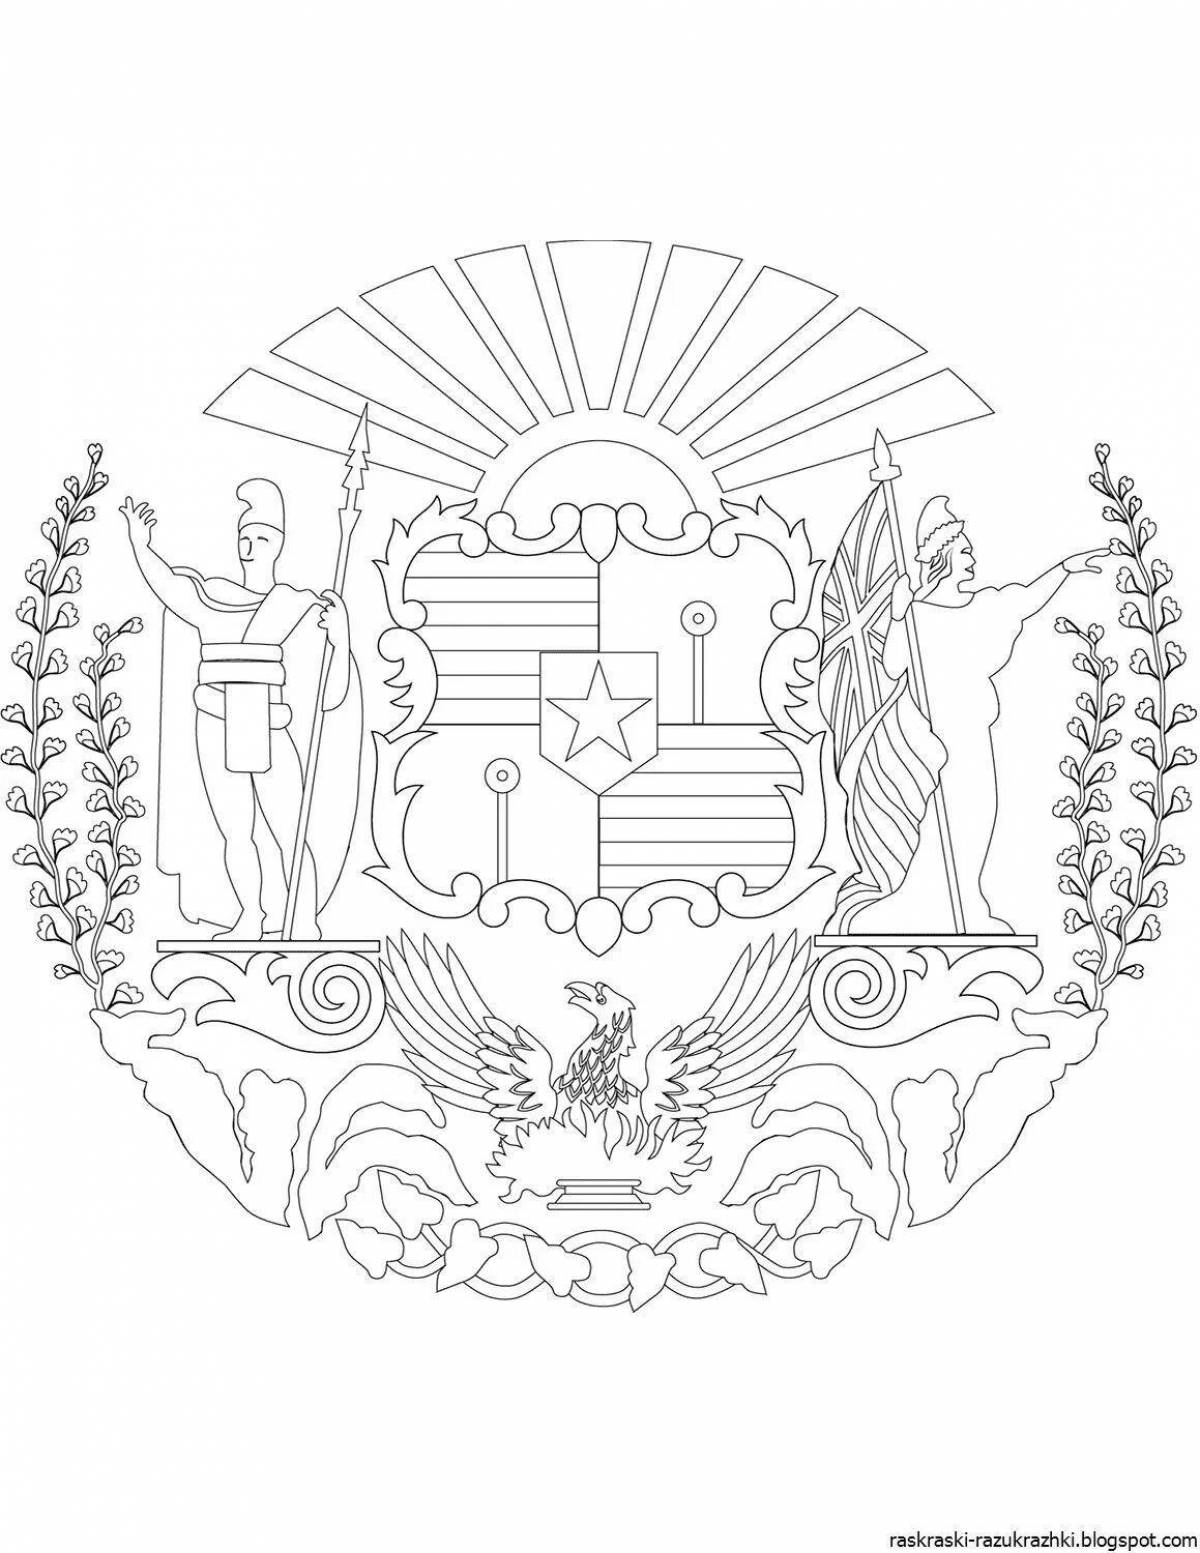 Coat of arms of Kuzbass #2